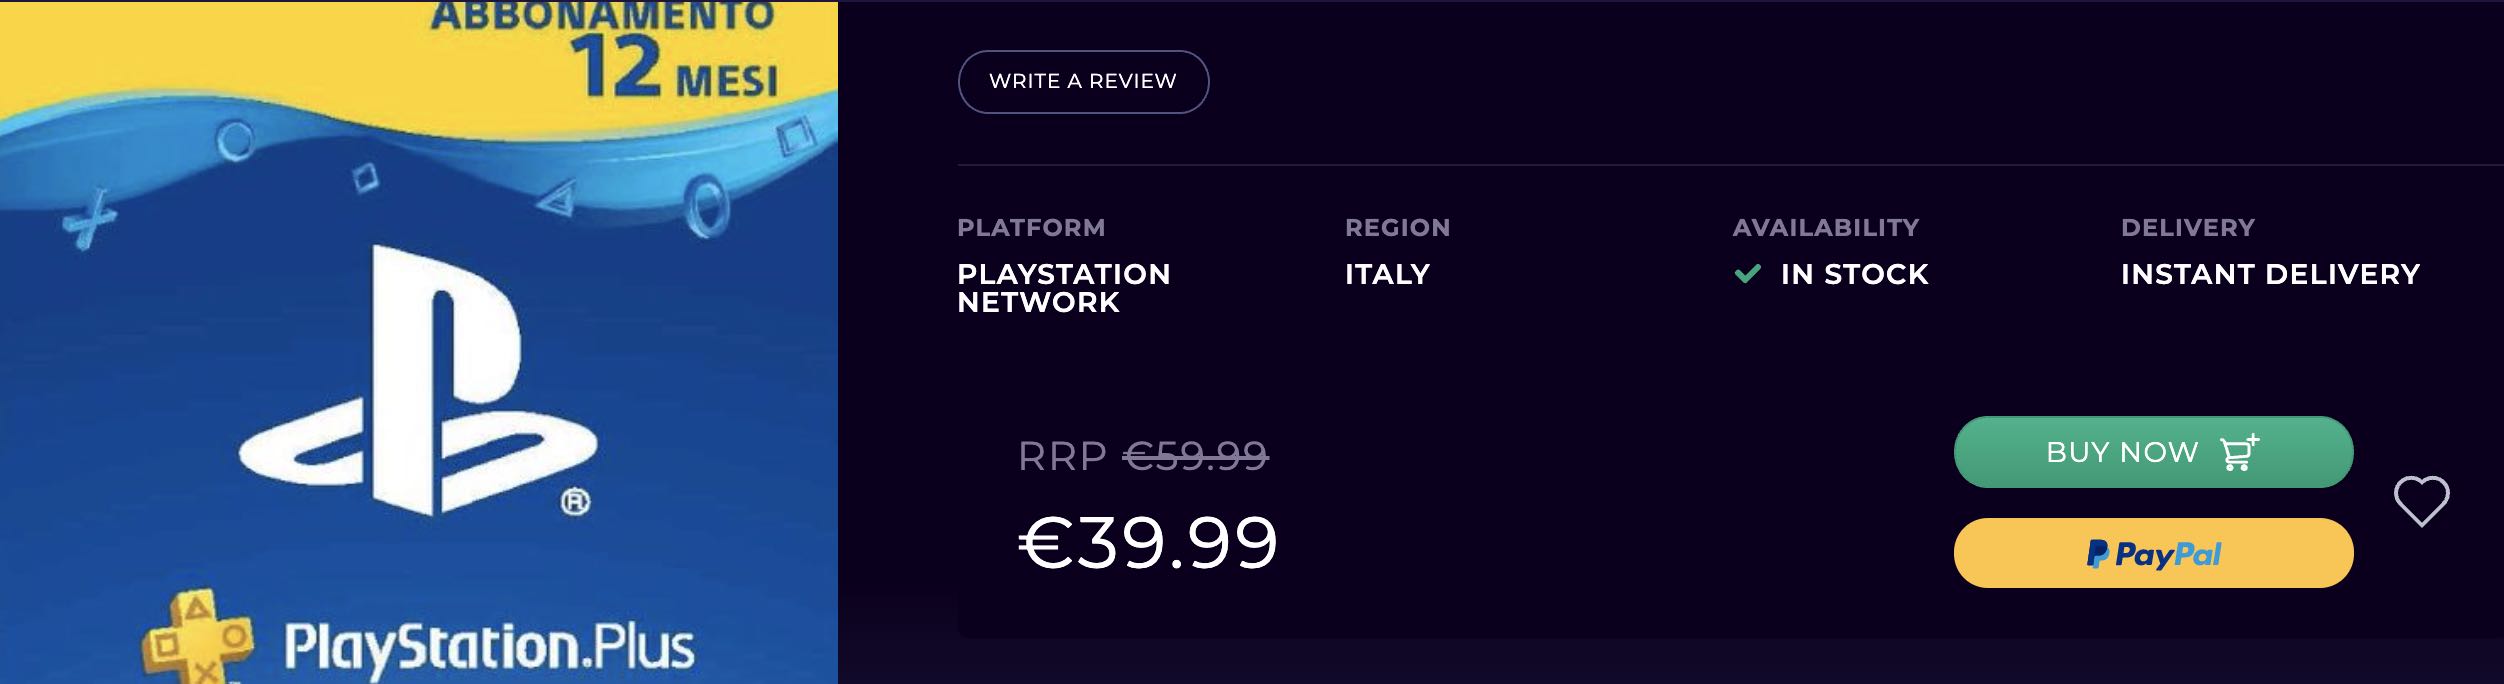 Abbonamento PlayStation Plus da 12 mesi in sconto di 20€ su CD